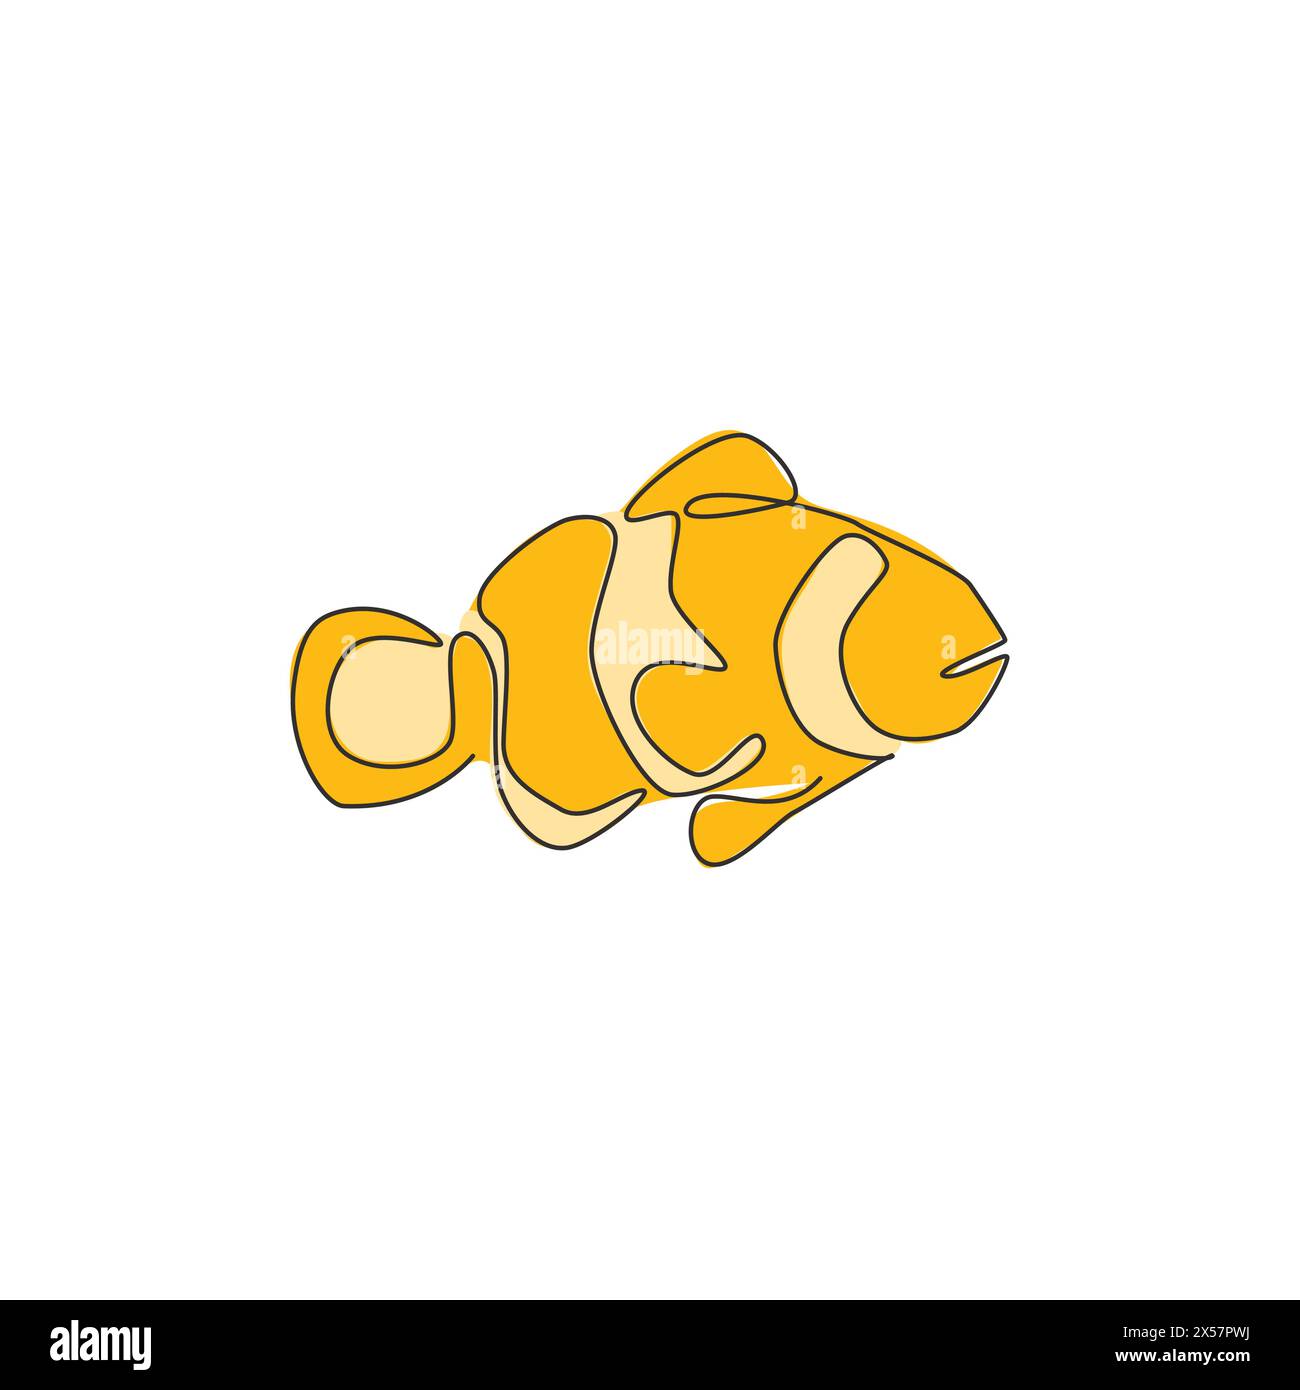 Eine einzeilige Zeichnung mit niedlichem Clownfisch für Aquarienbecken-Logo. Anemone-Fisch-Maskottchen-Konzept für Unterwasserwelt-Ikone. Durchgehende Linienzeichnung Stock Vektor